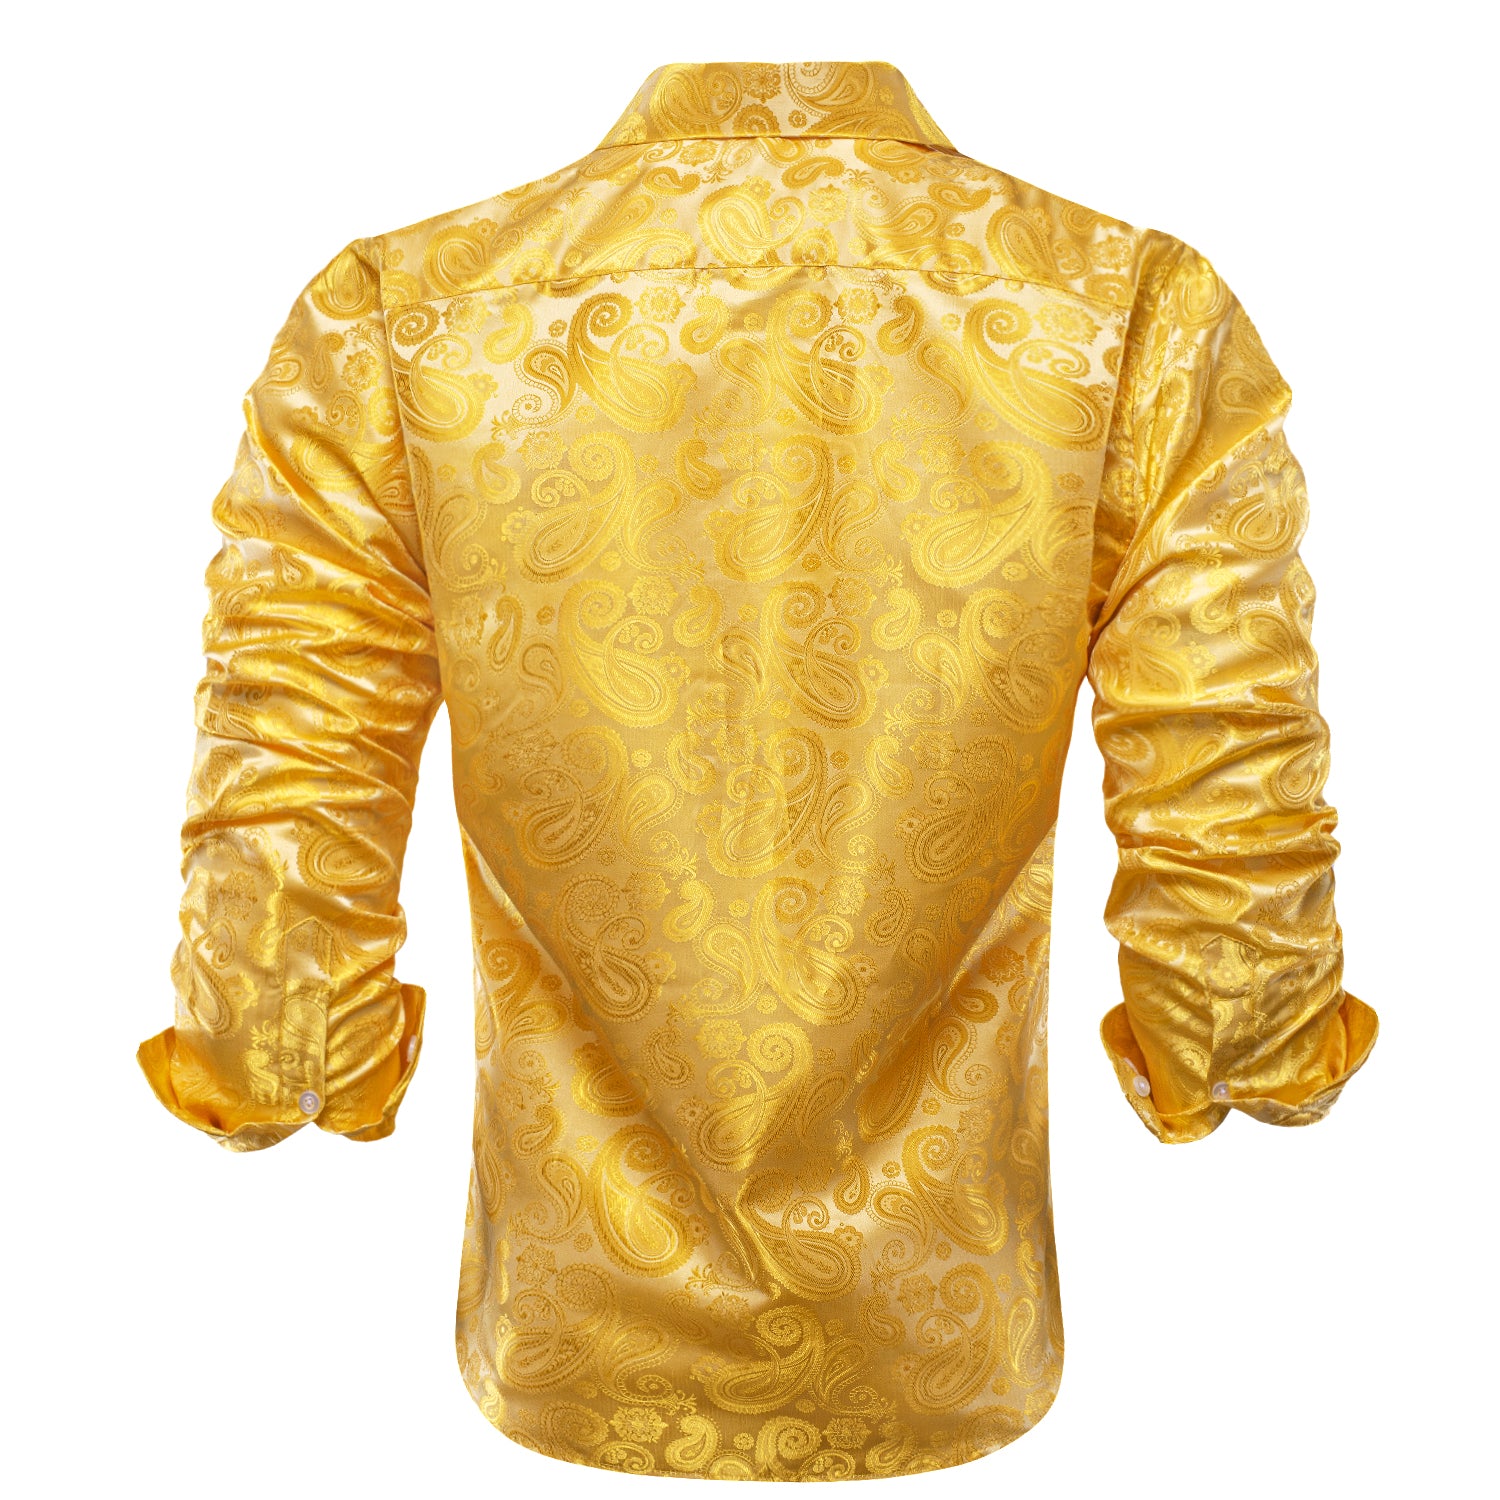 New Golden Silver Paisley Silk Men's Long Sleeve Shirt